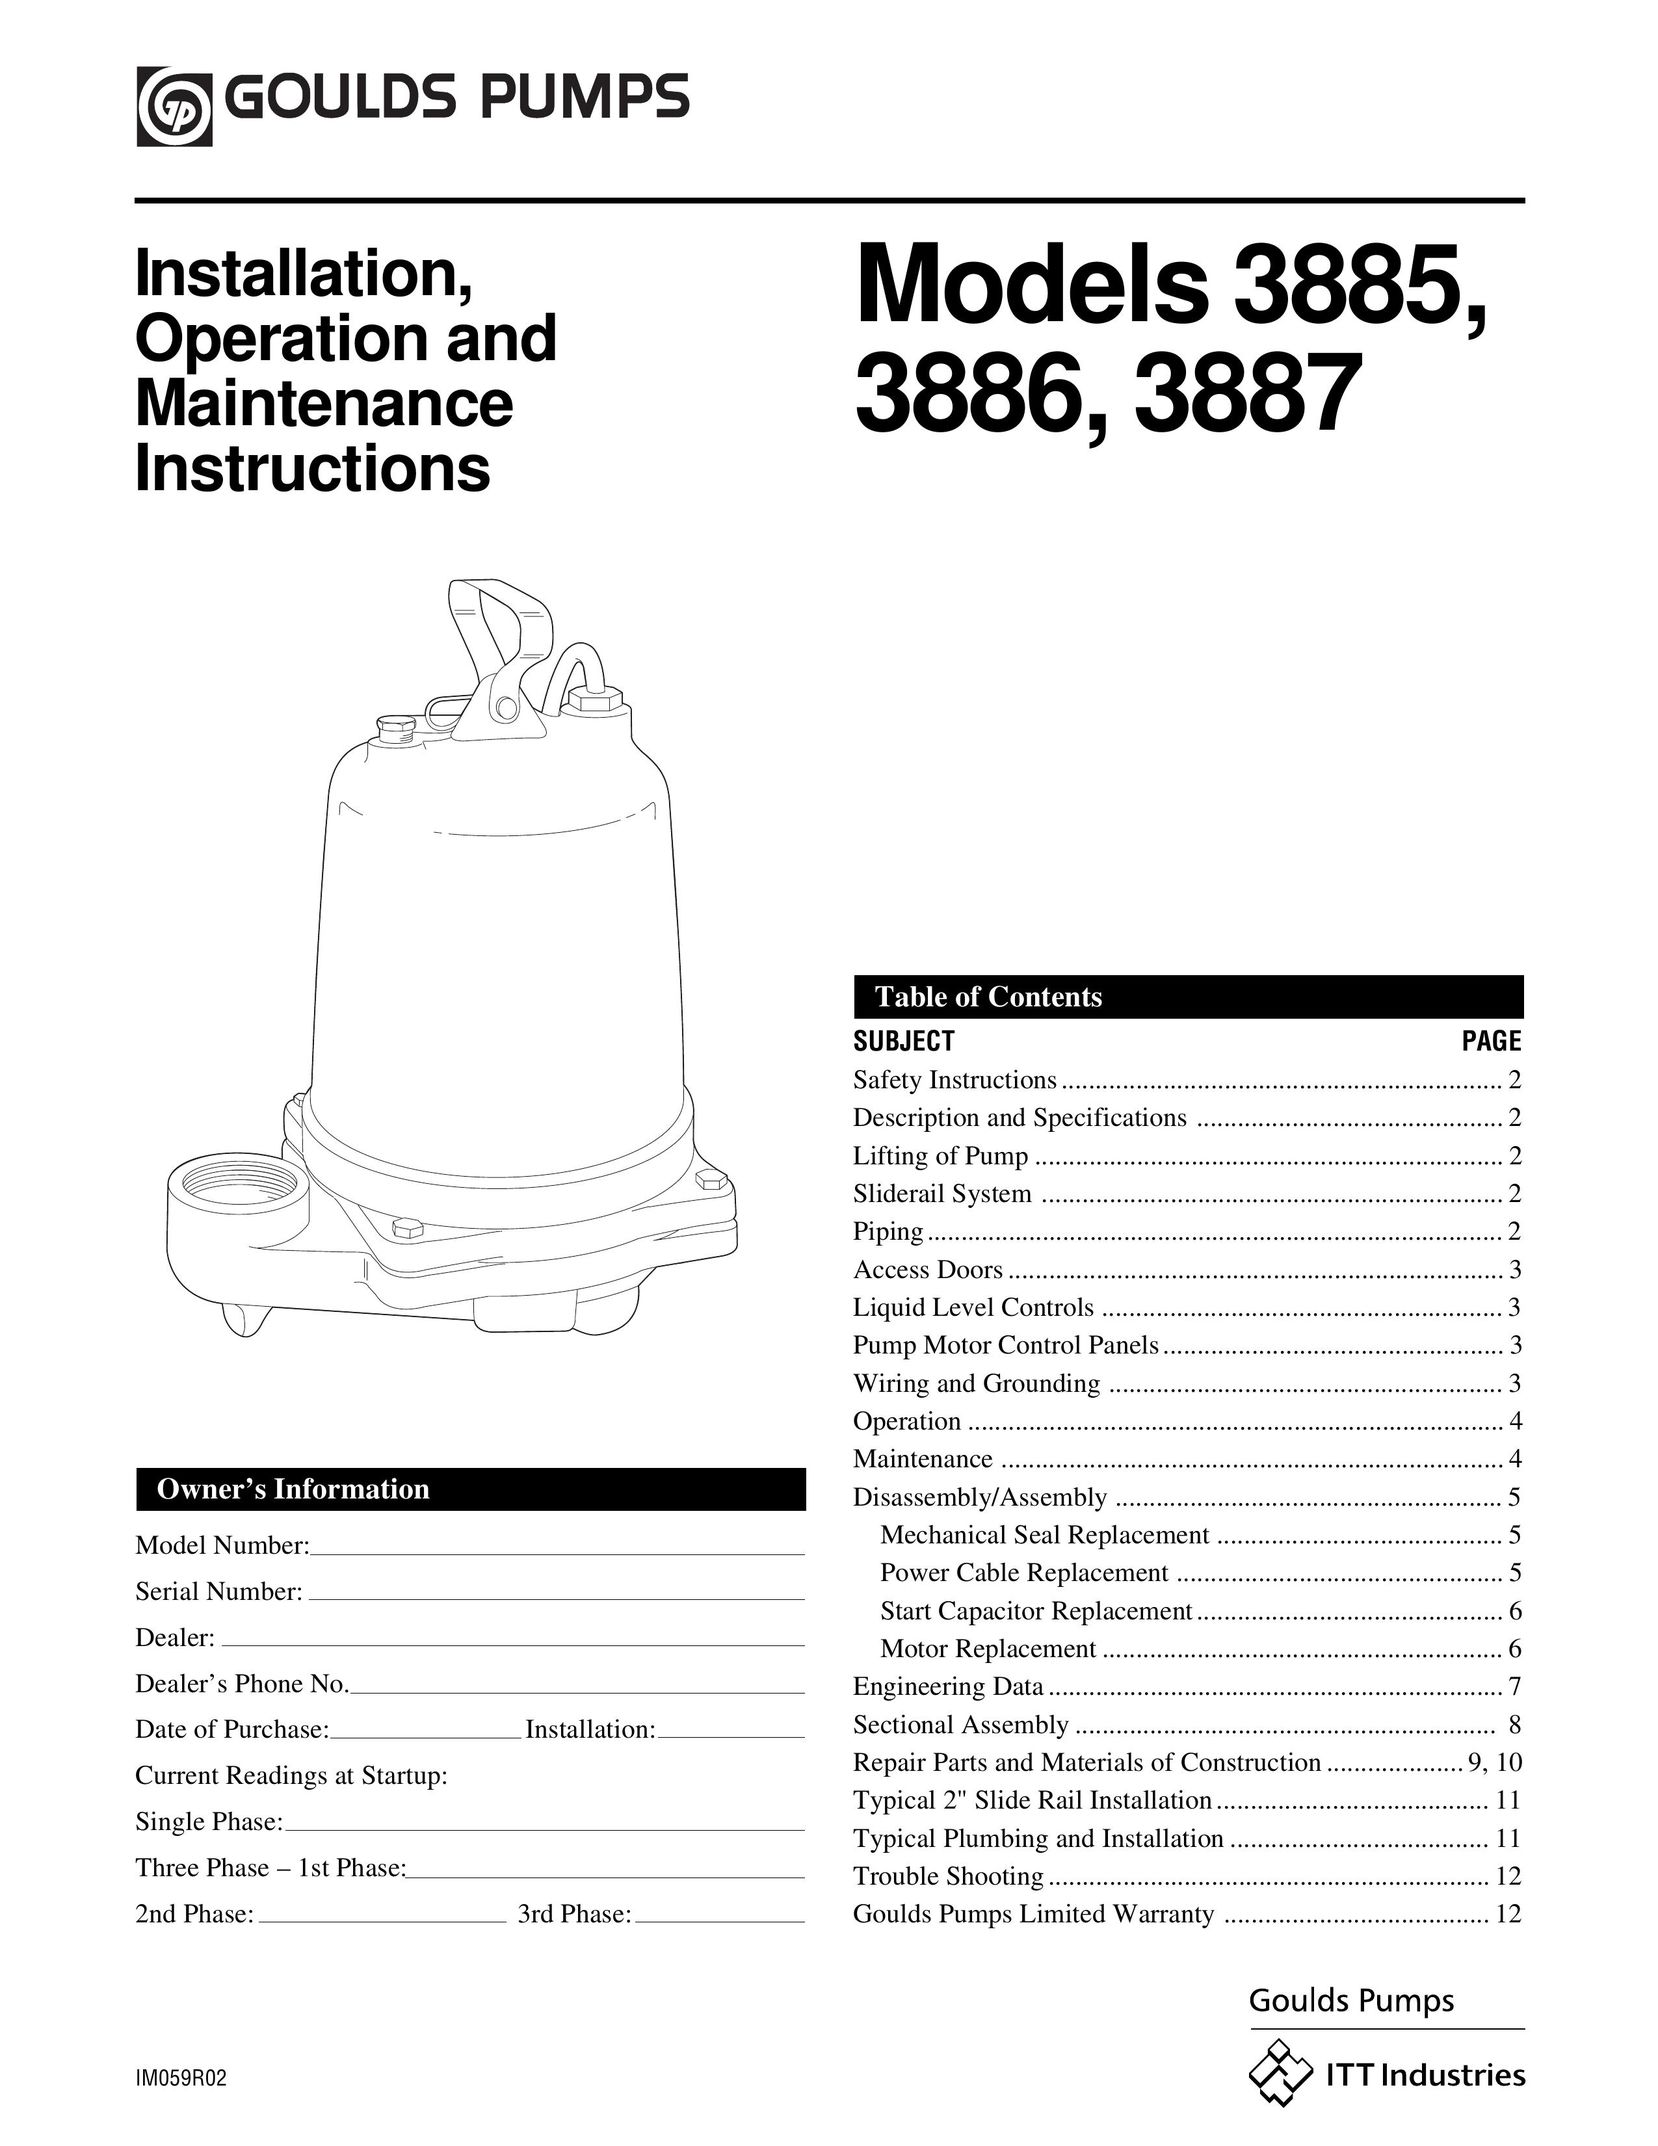 HP (Hewlett-Packard) 3887 Heat Pump User Manual